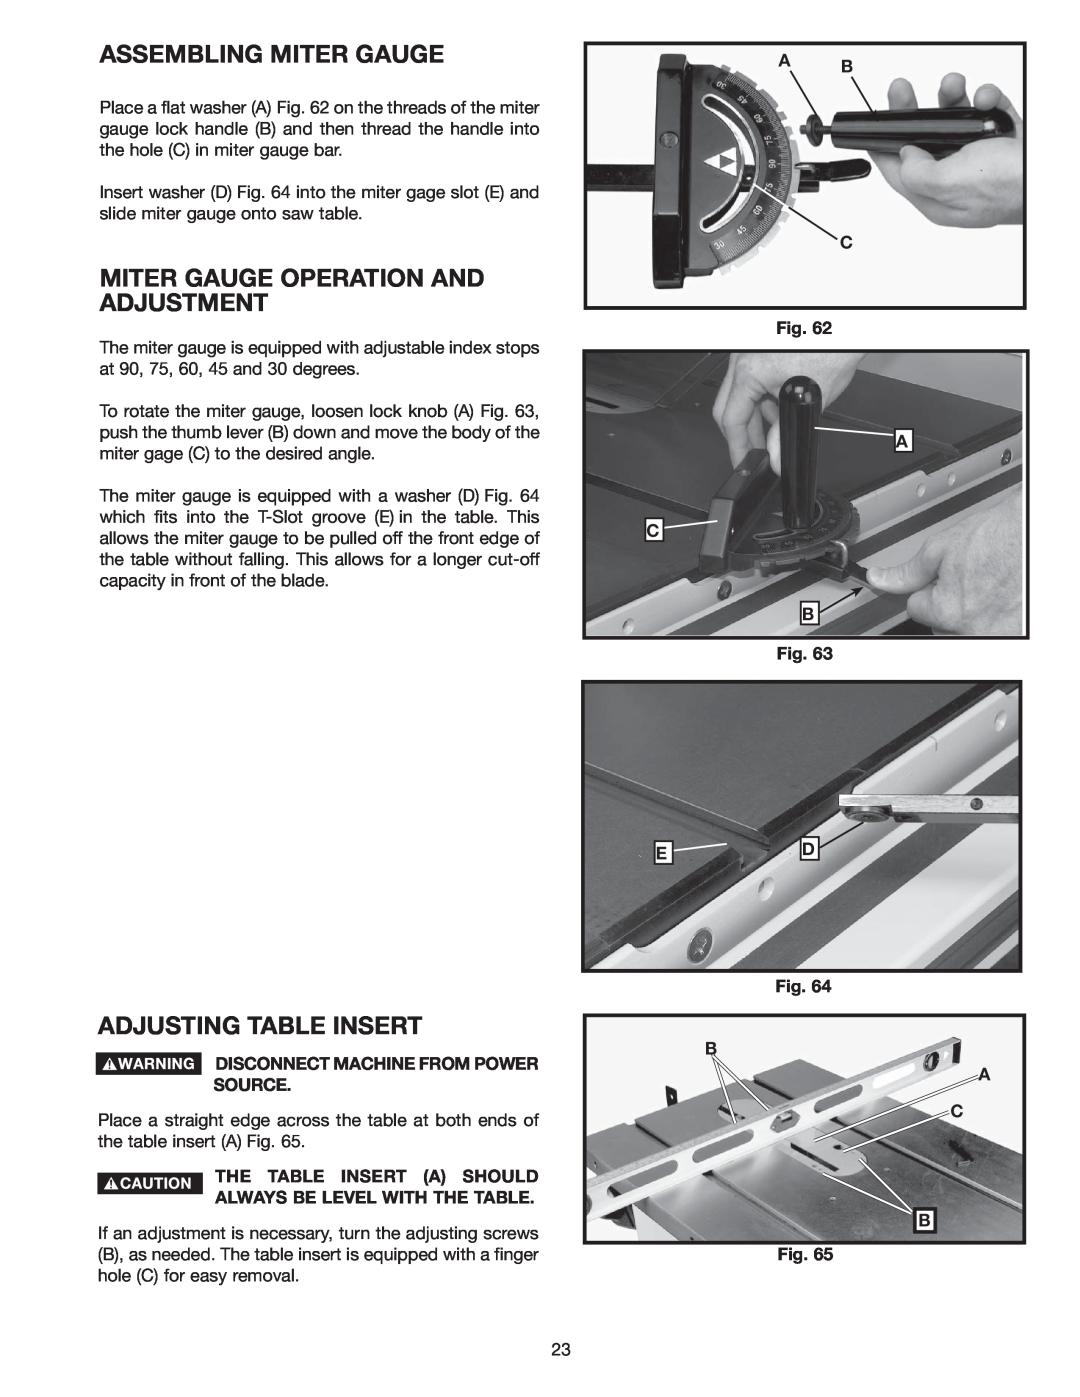 Delta 36-978 instruction manual Assembling Miter Gauge, Miter Gauge Operation And Adjustment, Adjusting Table Insert 